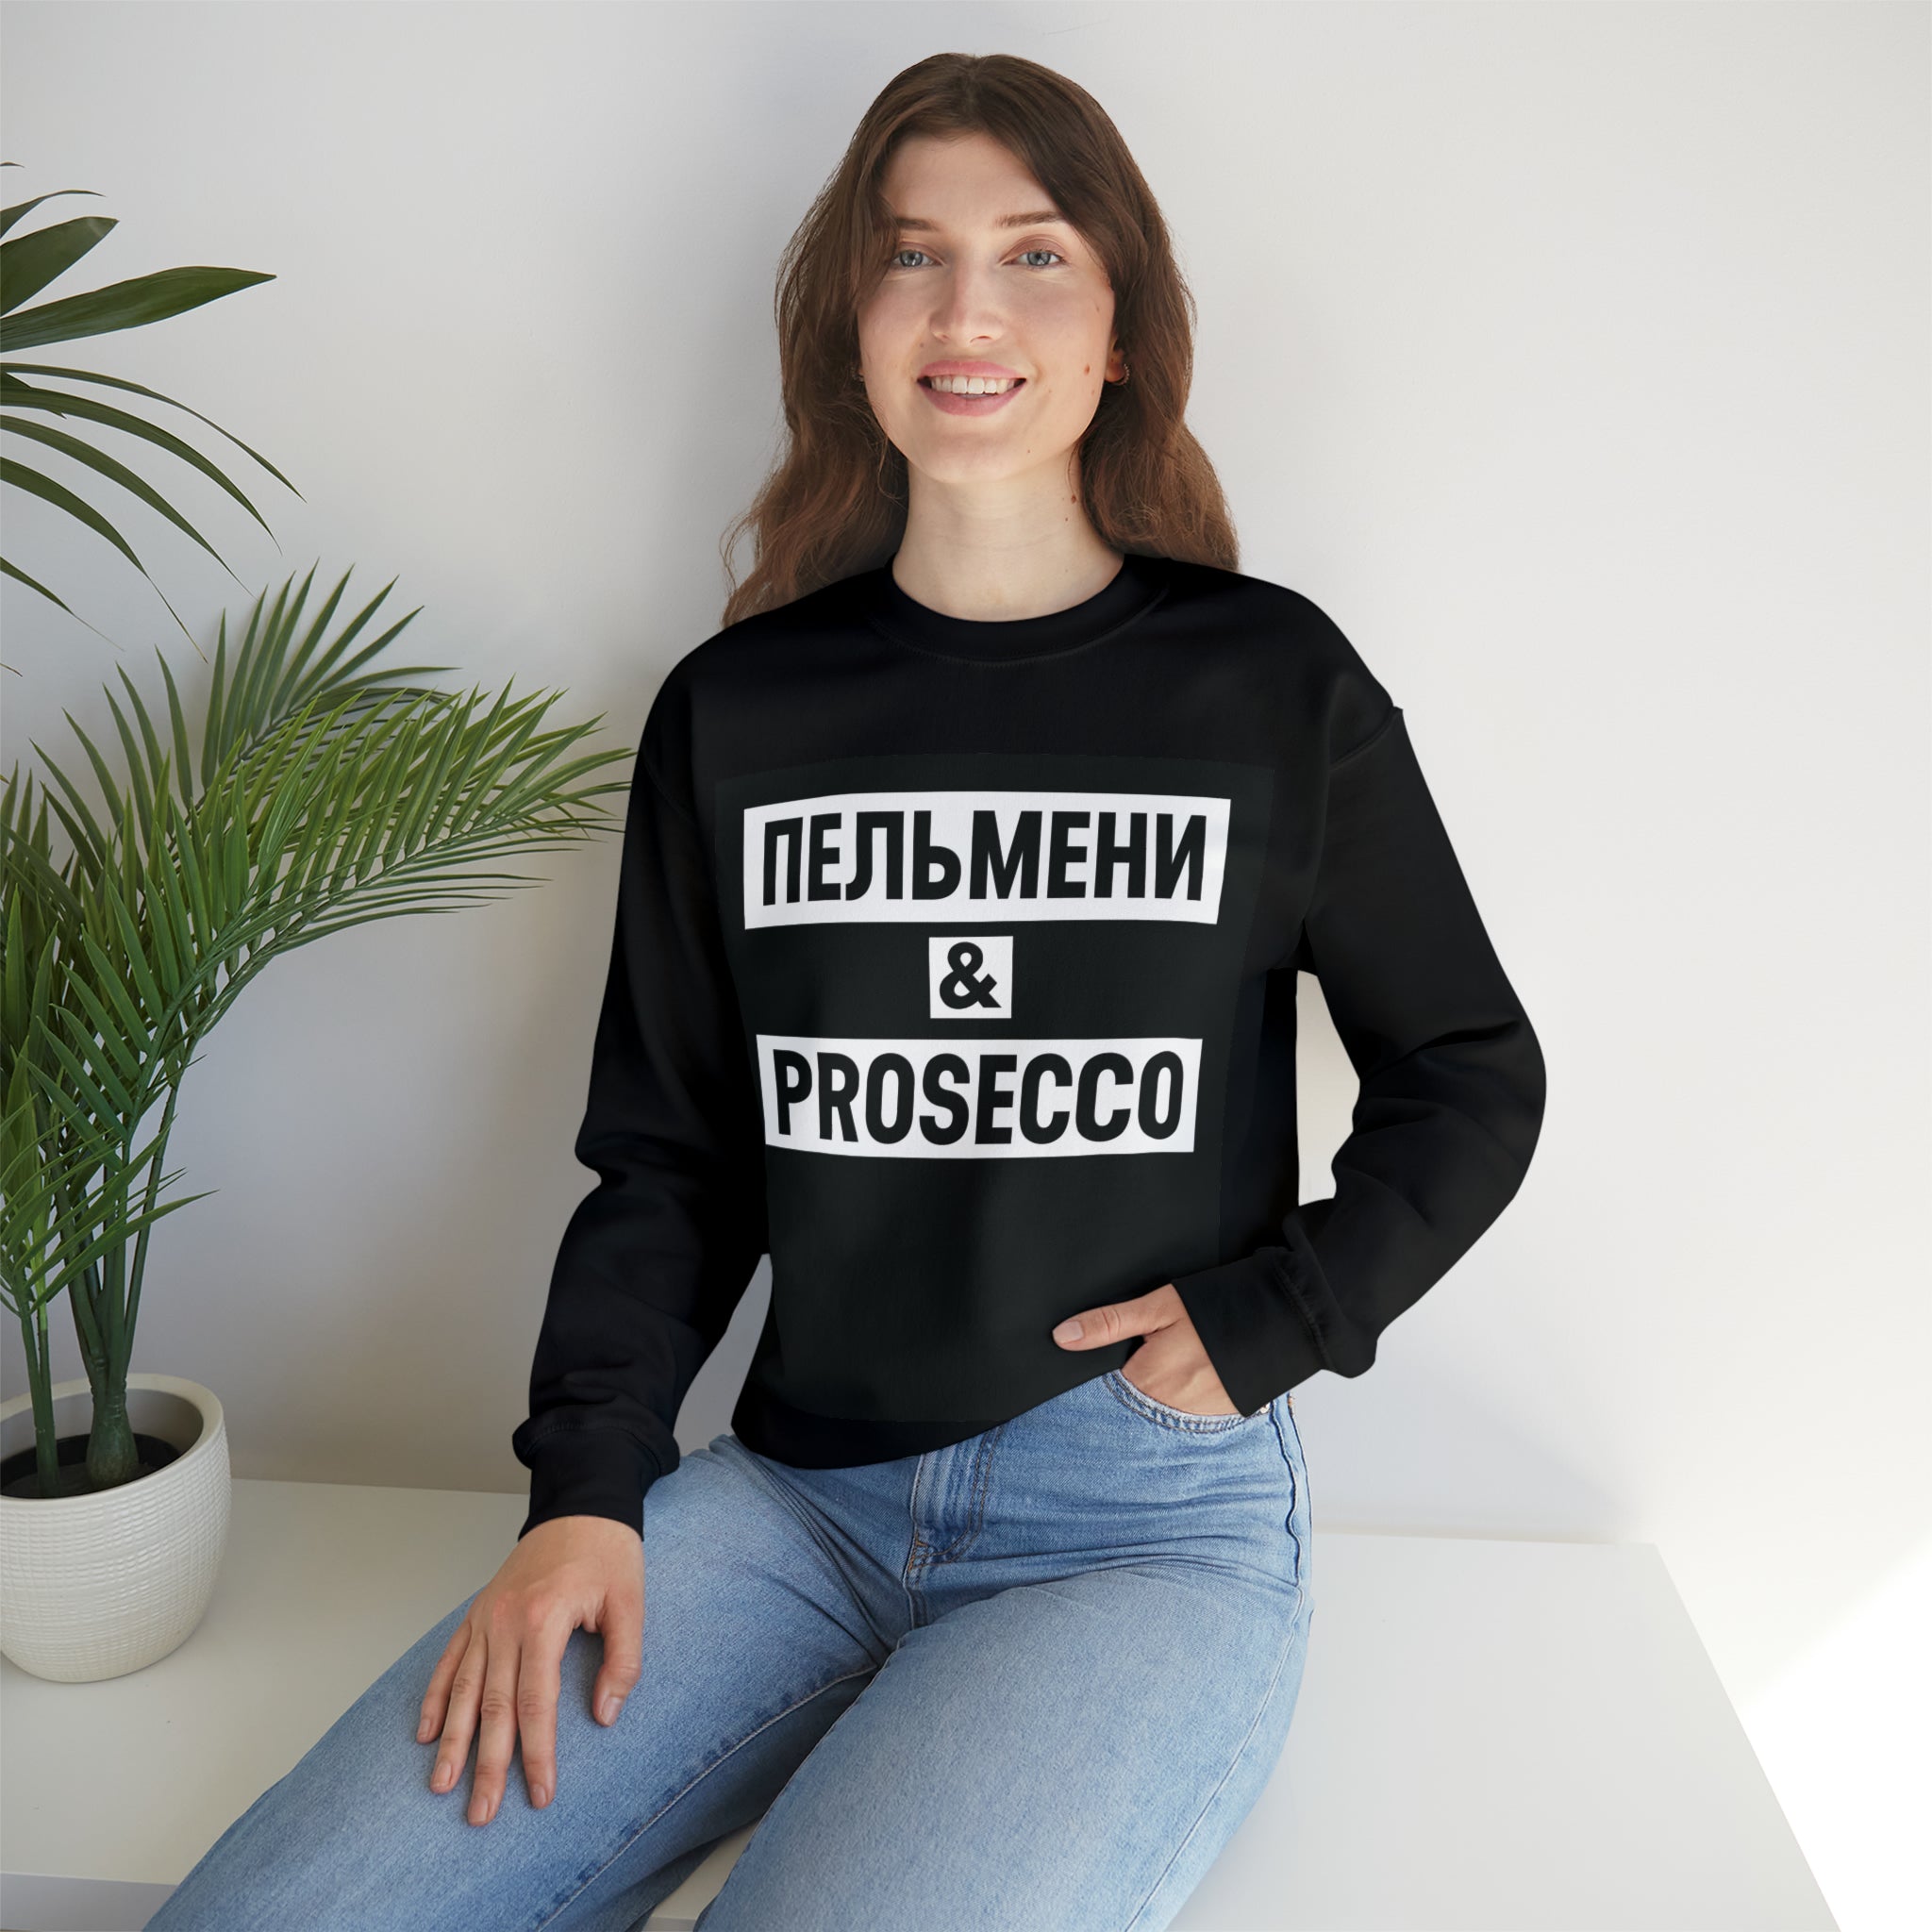 Pelmeni & PROSECCO Unisex Sweatshirt